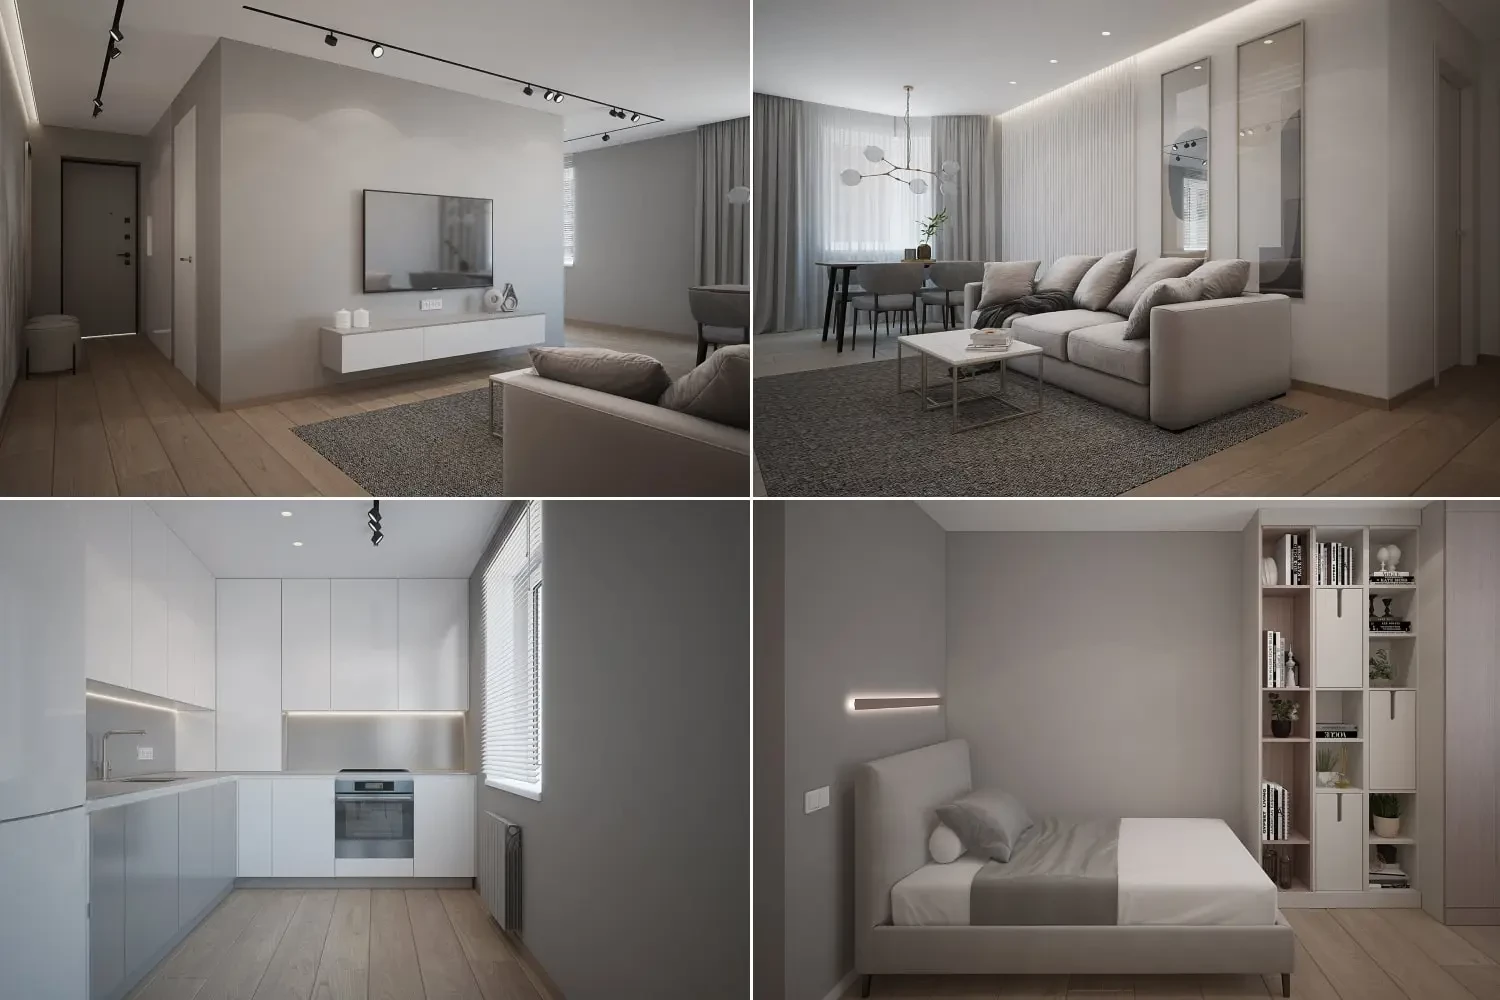 Дизайн в стиле минимализм для квартиры почти 100 м² от нашего дизайнера Михаила Борисевича